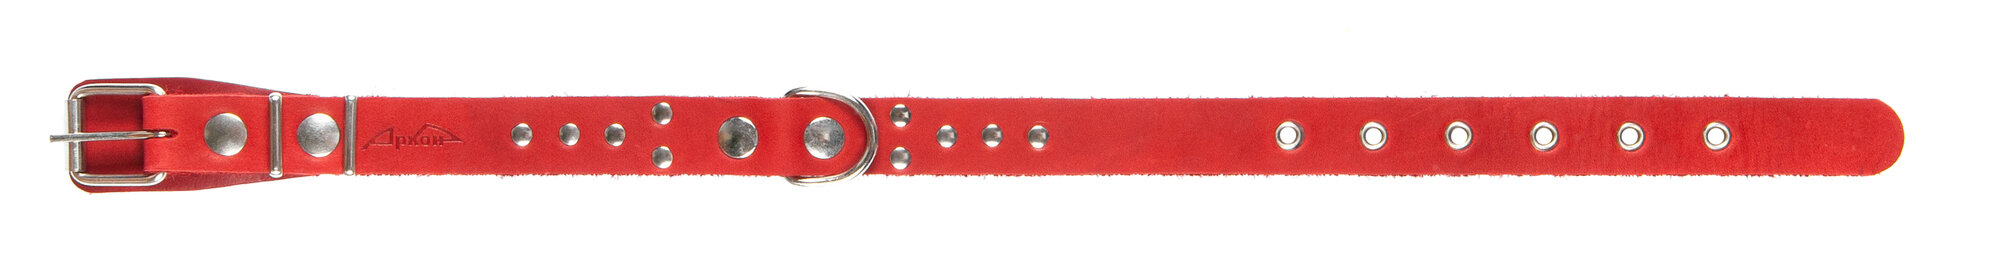 Ошейник аркон кожаный для собак однослойный, украшения, красный (40-54 см/25 мм)